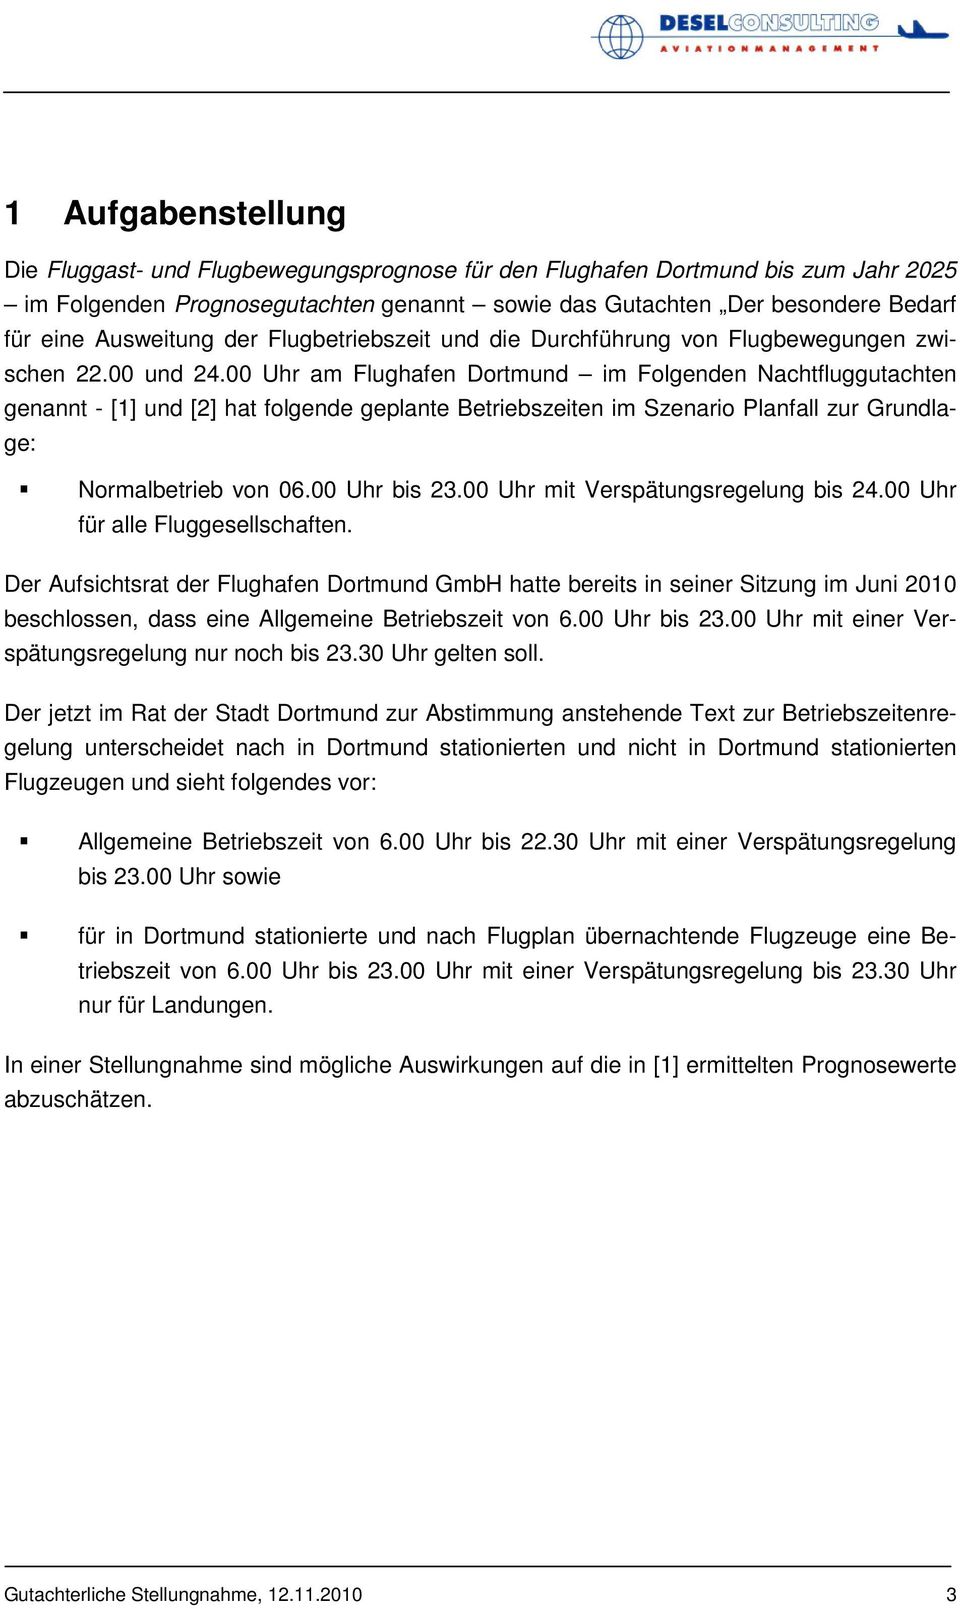 00 Uhr am Flughafen Dortmund im Folgenden Nachtfluggutachten genannt - [1] und [2] hat folgende geplante Betriebszeiten im Szenario Planfall zur Grundlage: Normalbetrieb von 06.00 Uhr bis 23.